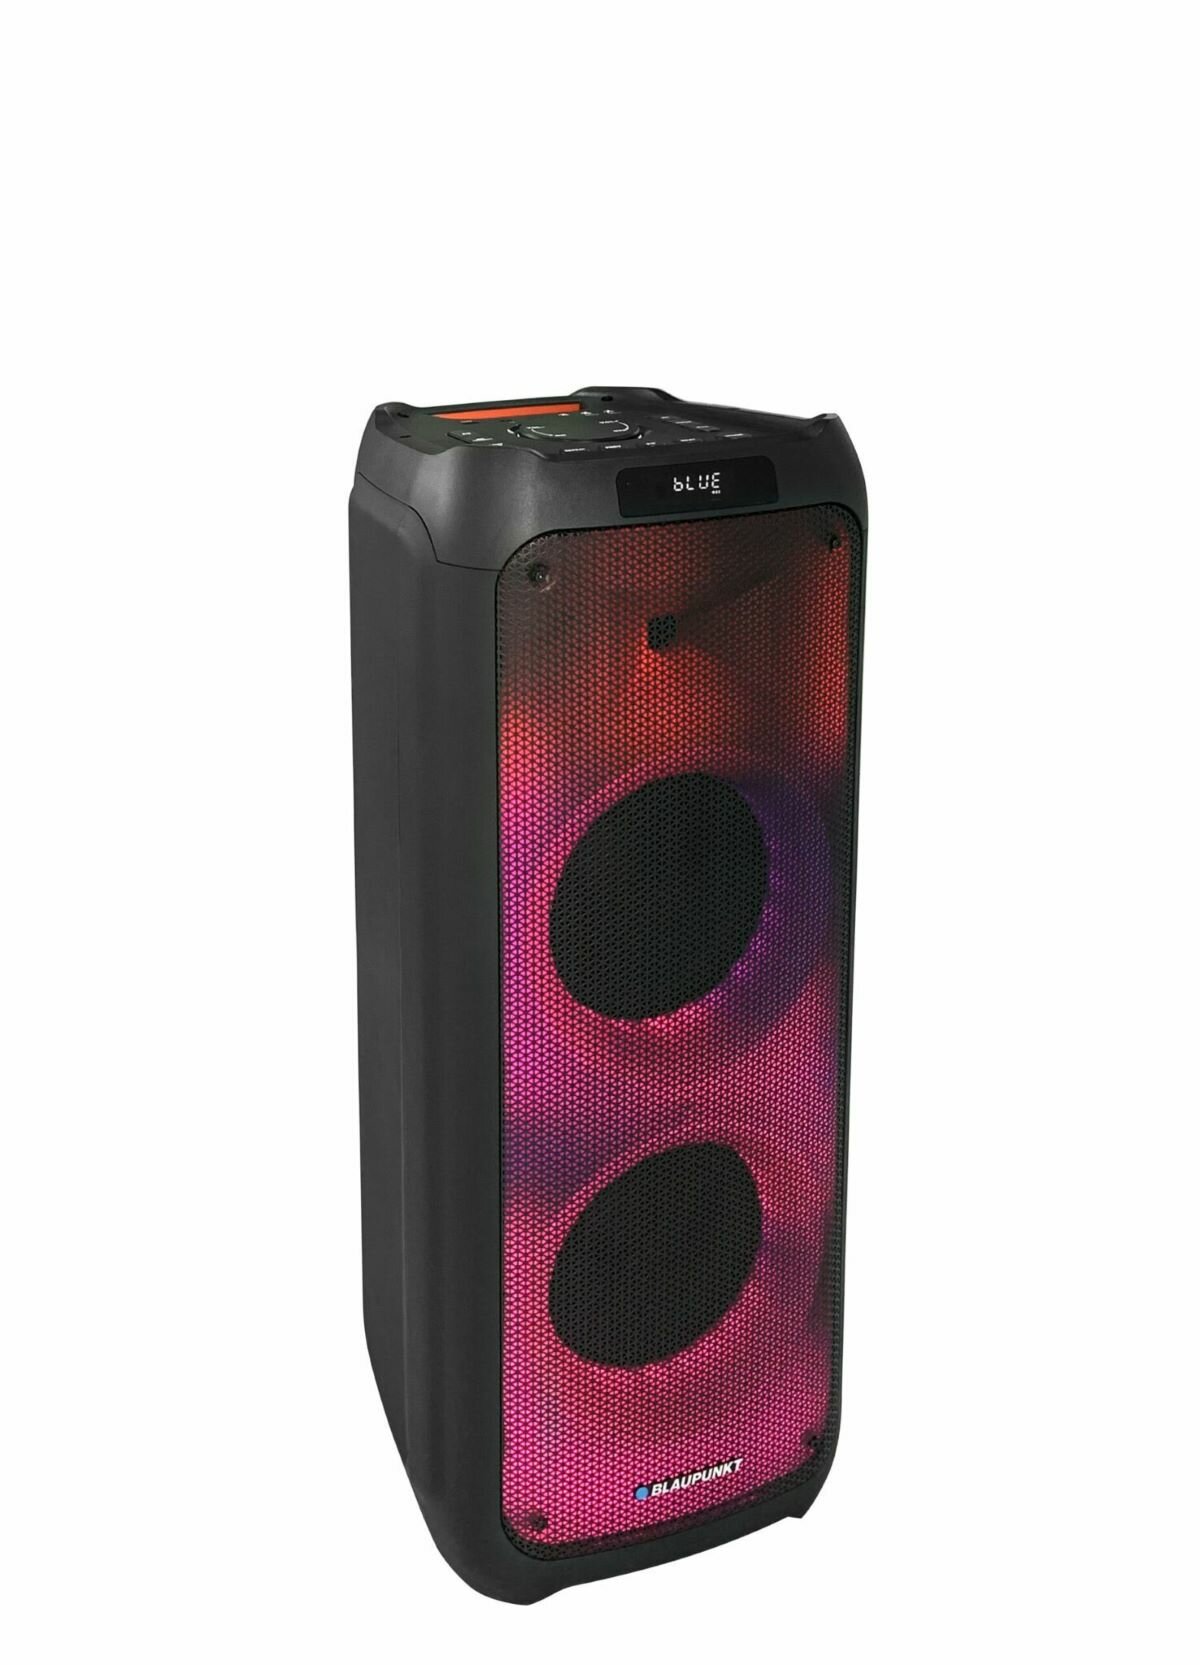 Głośnik Blaupunkt PB10DB bokiem oświetlony w kolorach czerwieni i fioletu